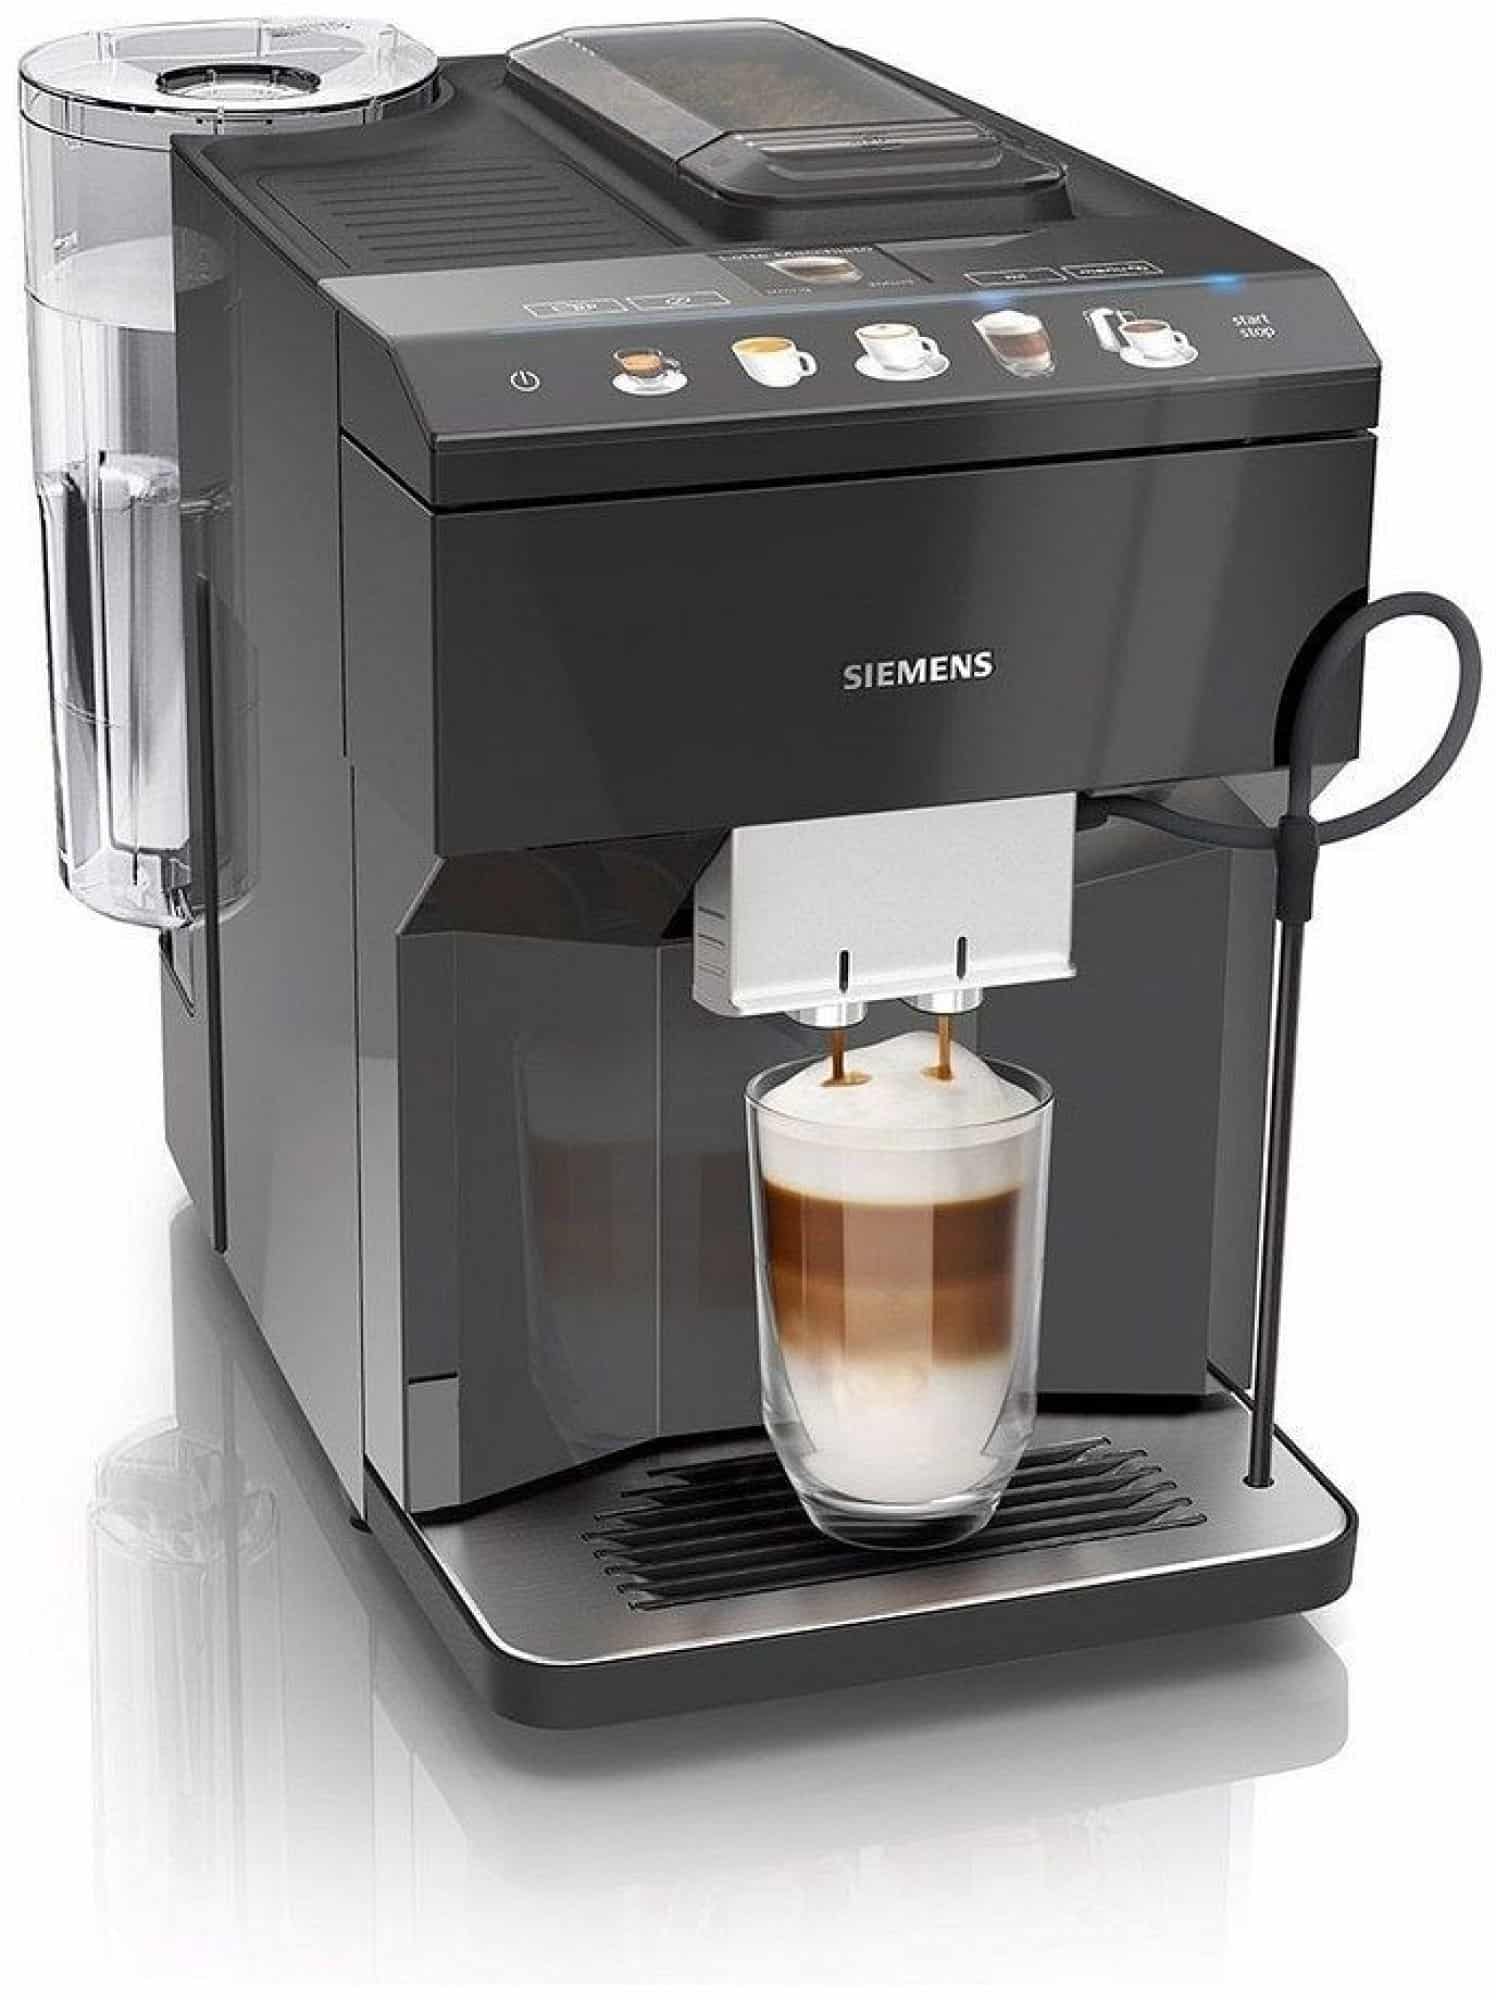 Kvalitní automatický kávovar Siemens s keramickým mlýnkem.